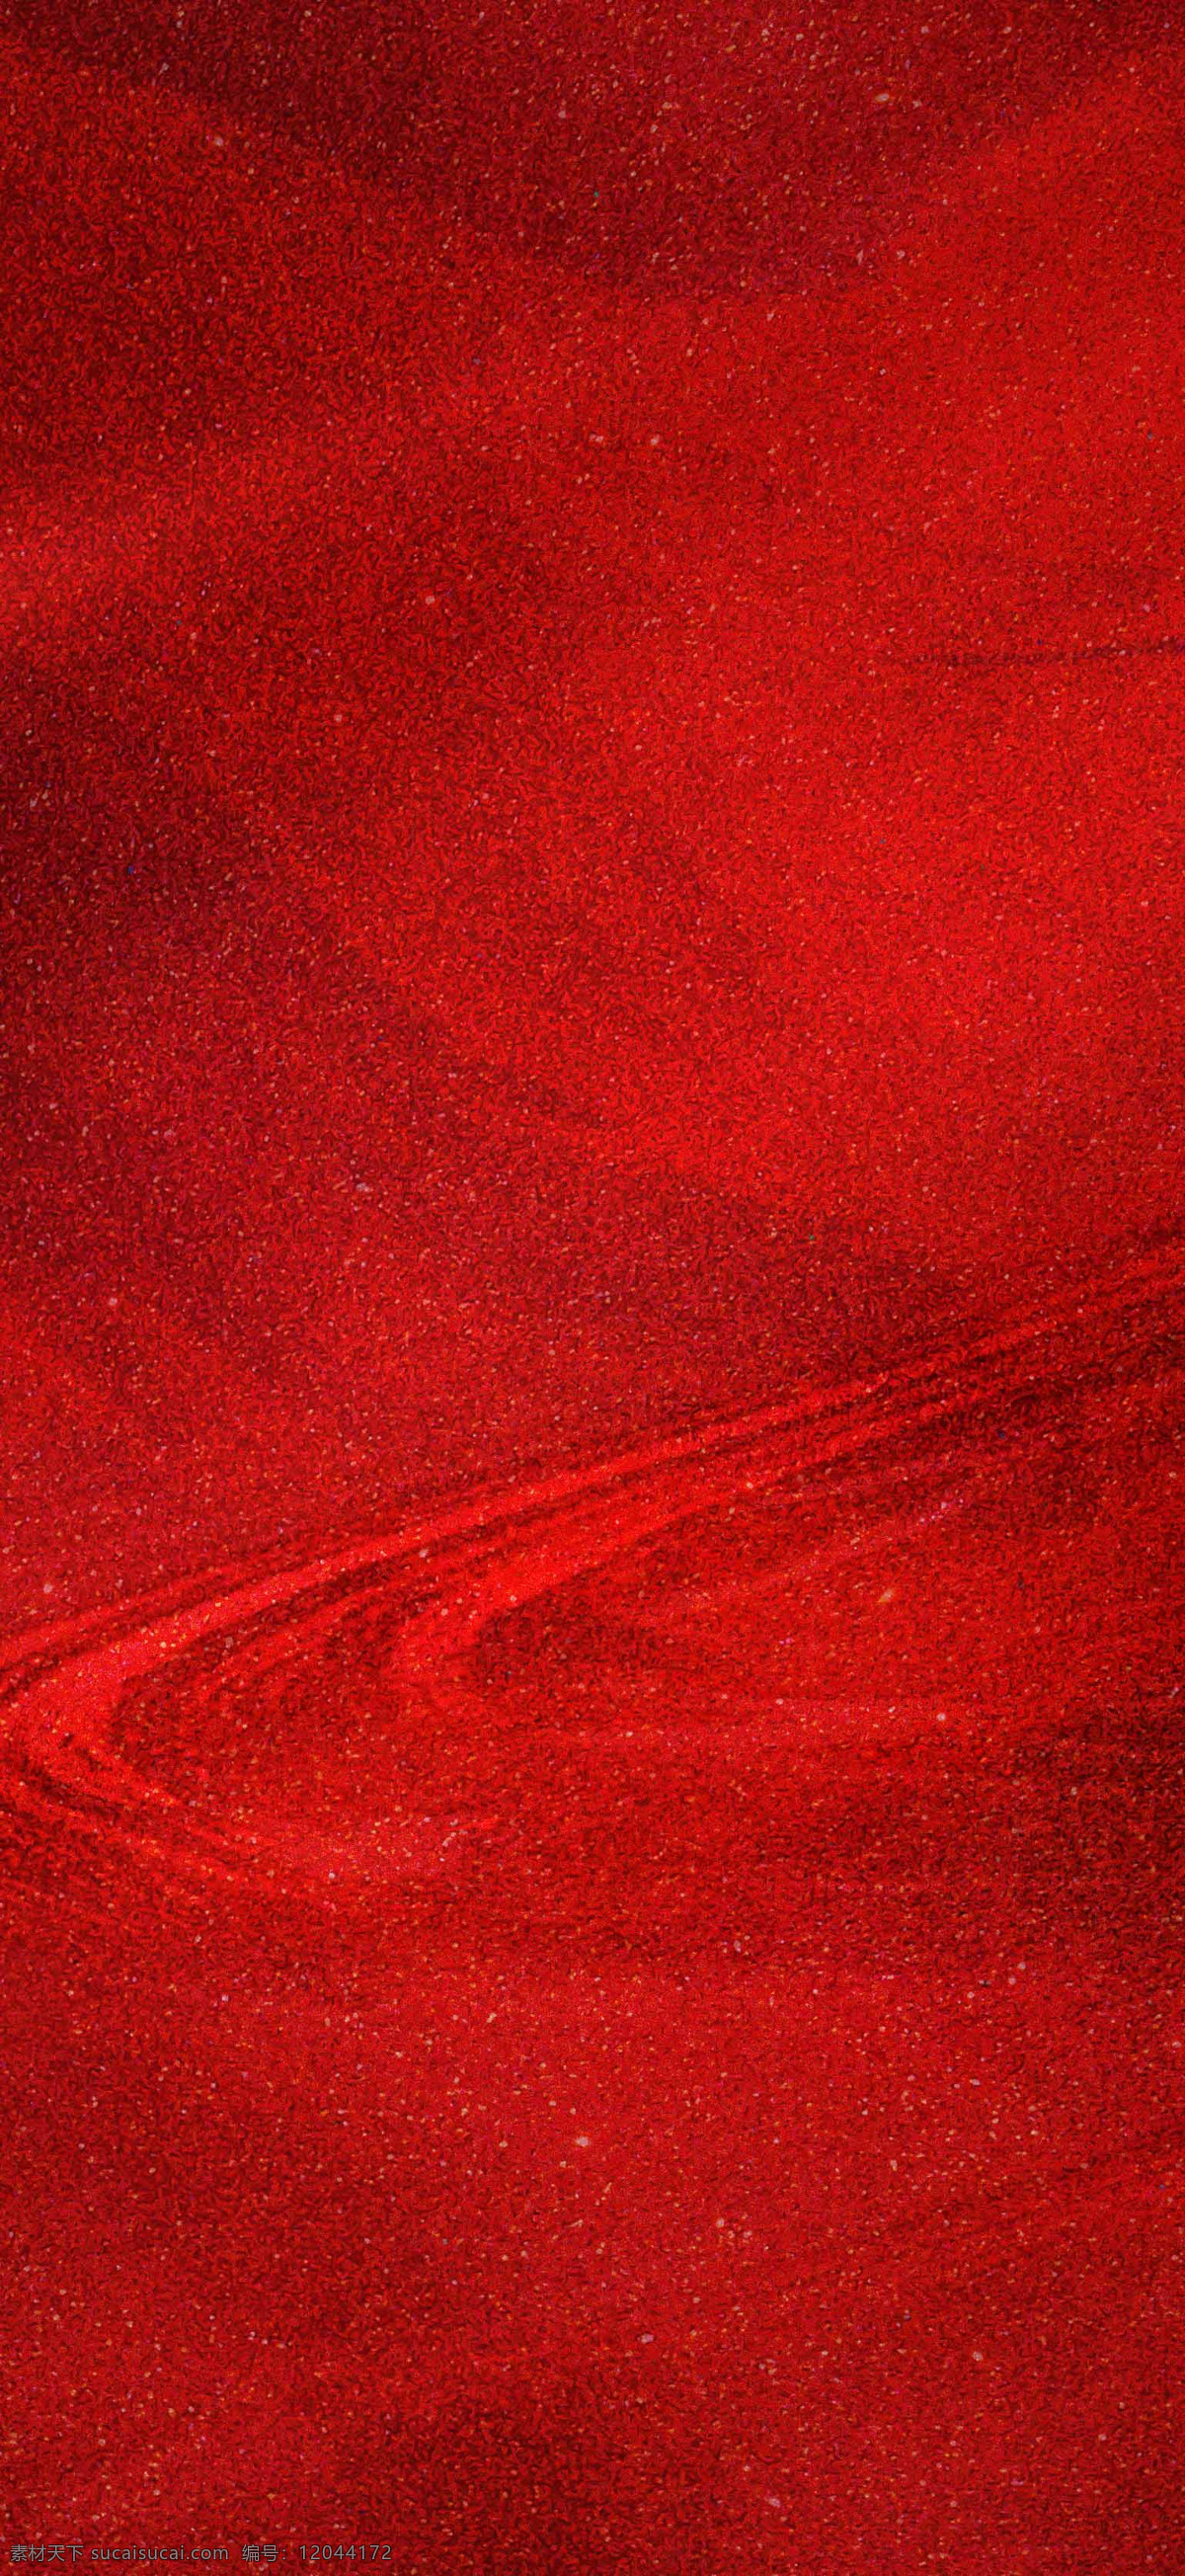 高级 红色 质感 背景图片 抽象 水墨 肌理 地产 图案 炫酷 大气 简约 背景 底纹边框 背景底纹